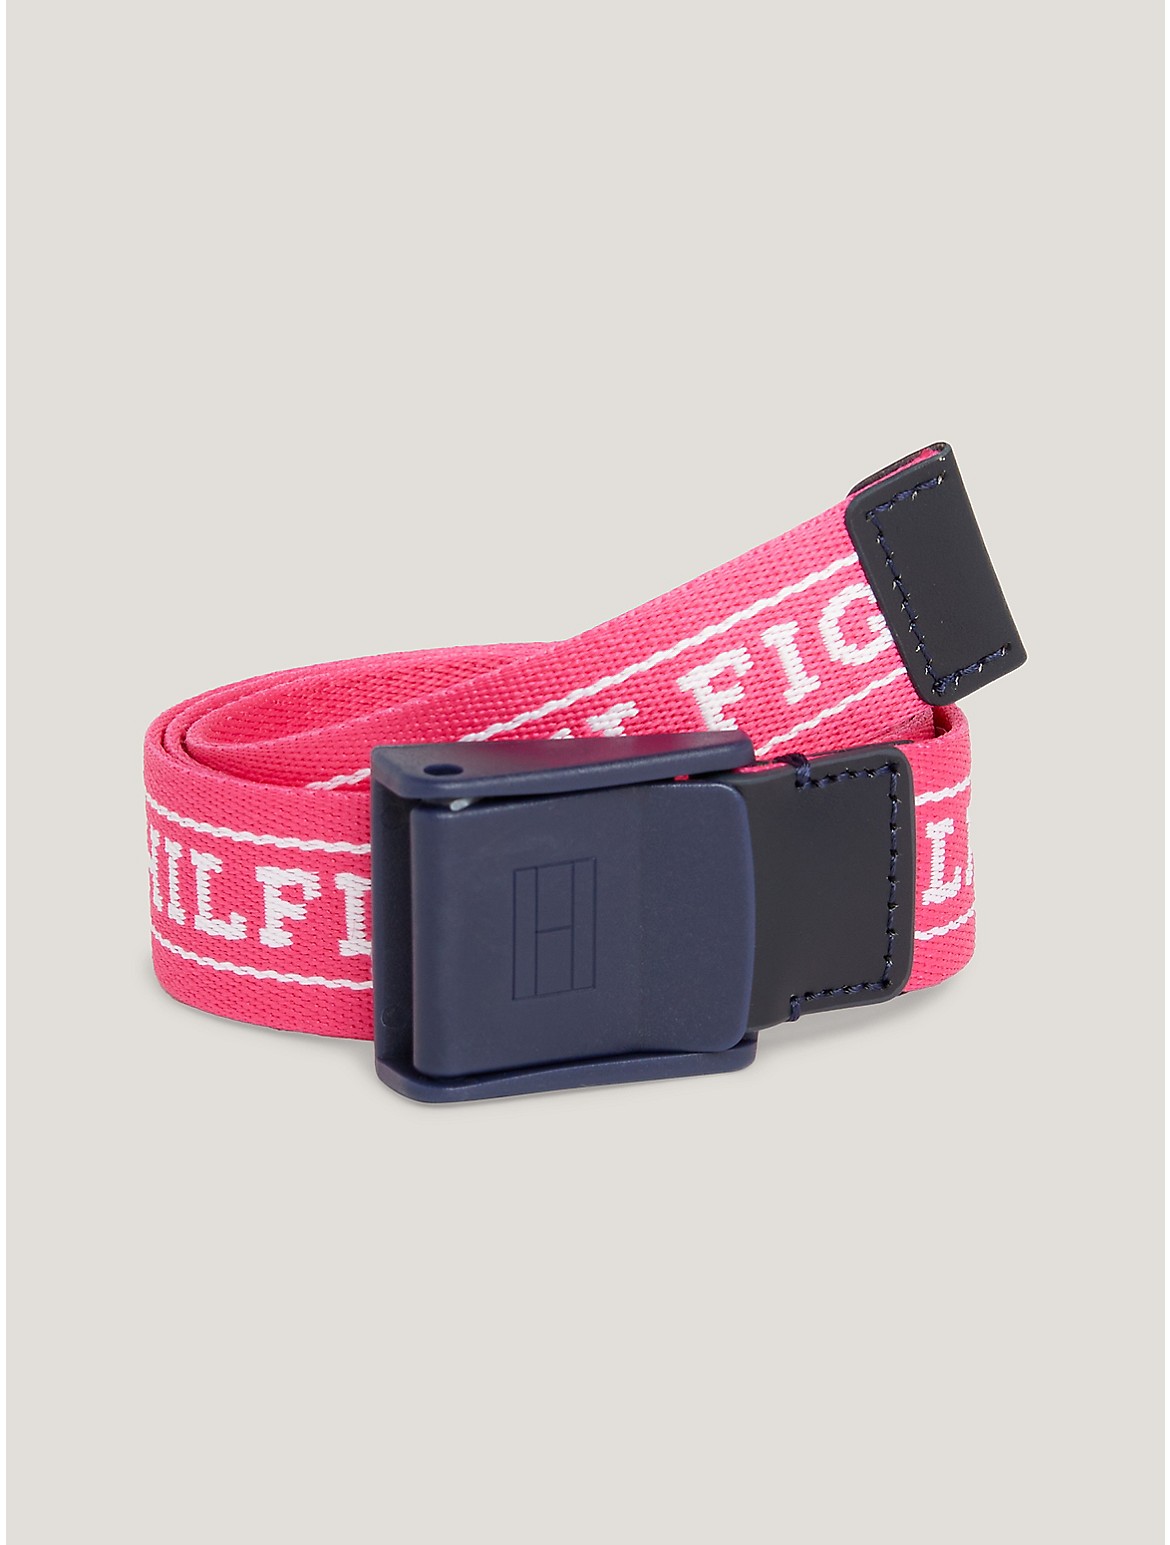 Tommy Hilfiger Kids' Monotype Logo Webbed Belt - Pink - S-M